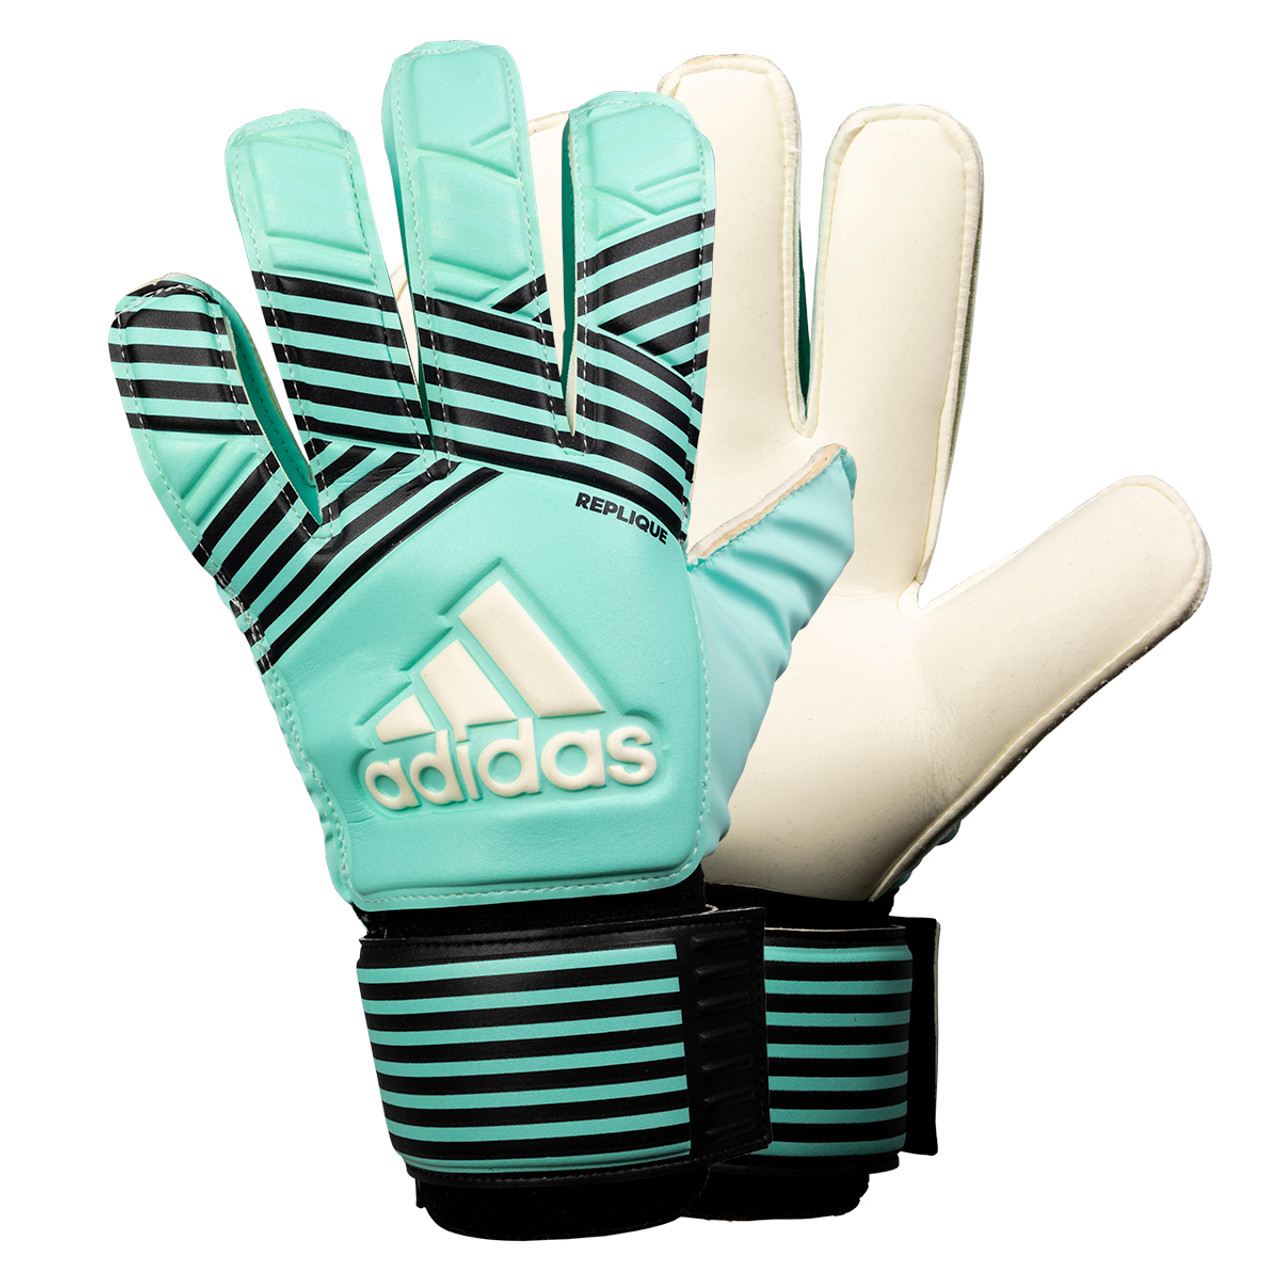 Adidas Ace Replique Soccer Goalie Gloves | Aqua & Navy